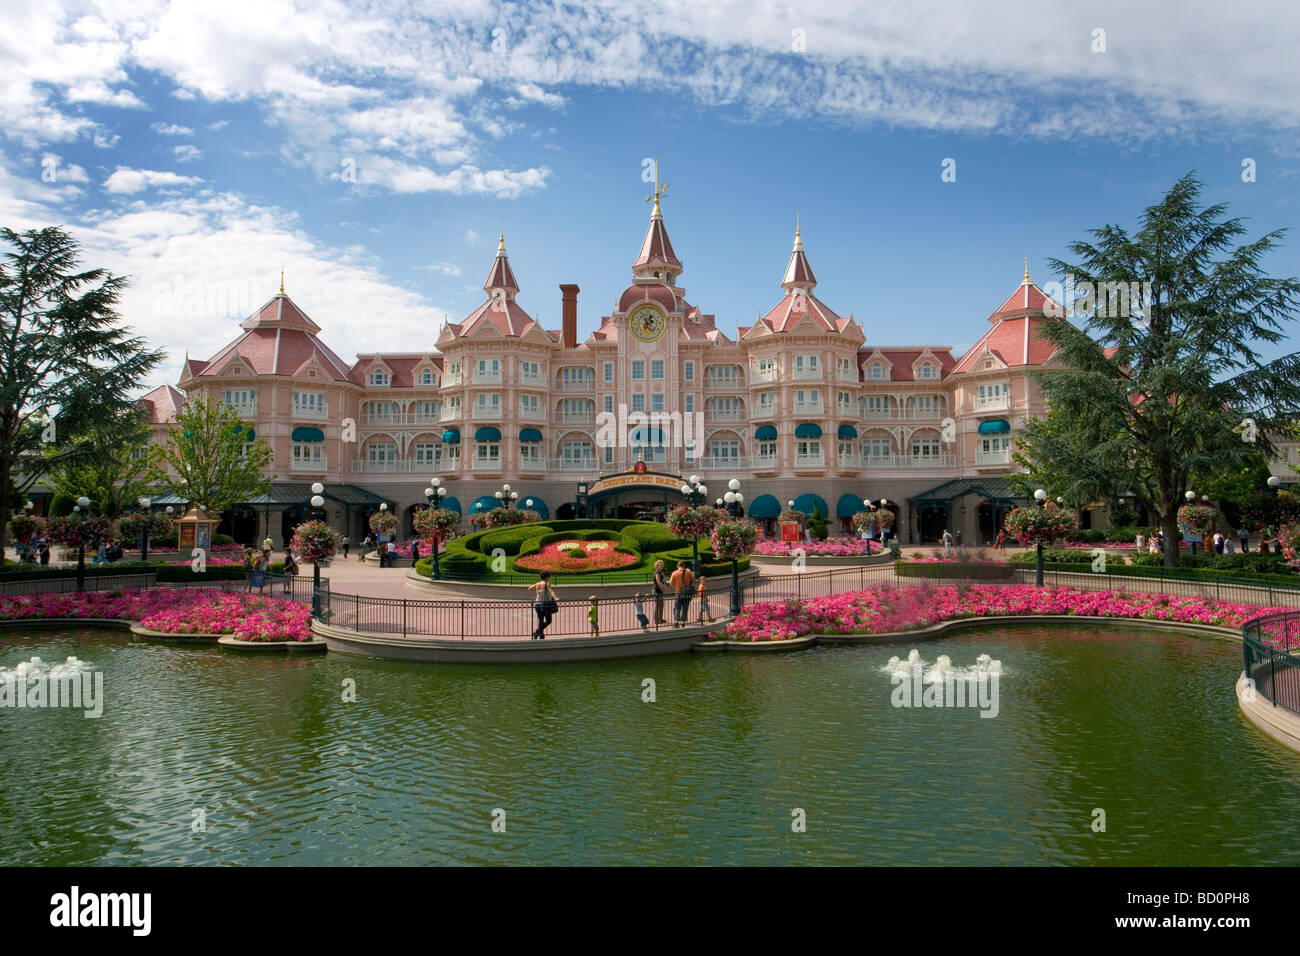 Eingang zum Disney-Park, Disneyland Paris, Frankreich Stockfoto